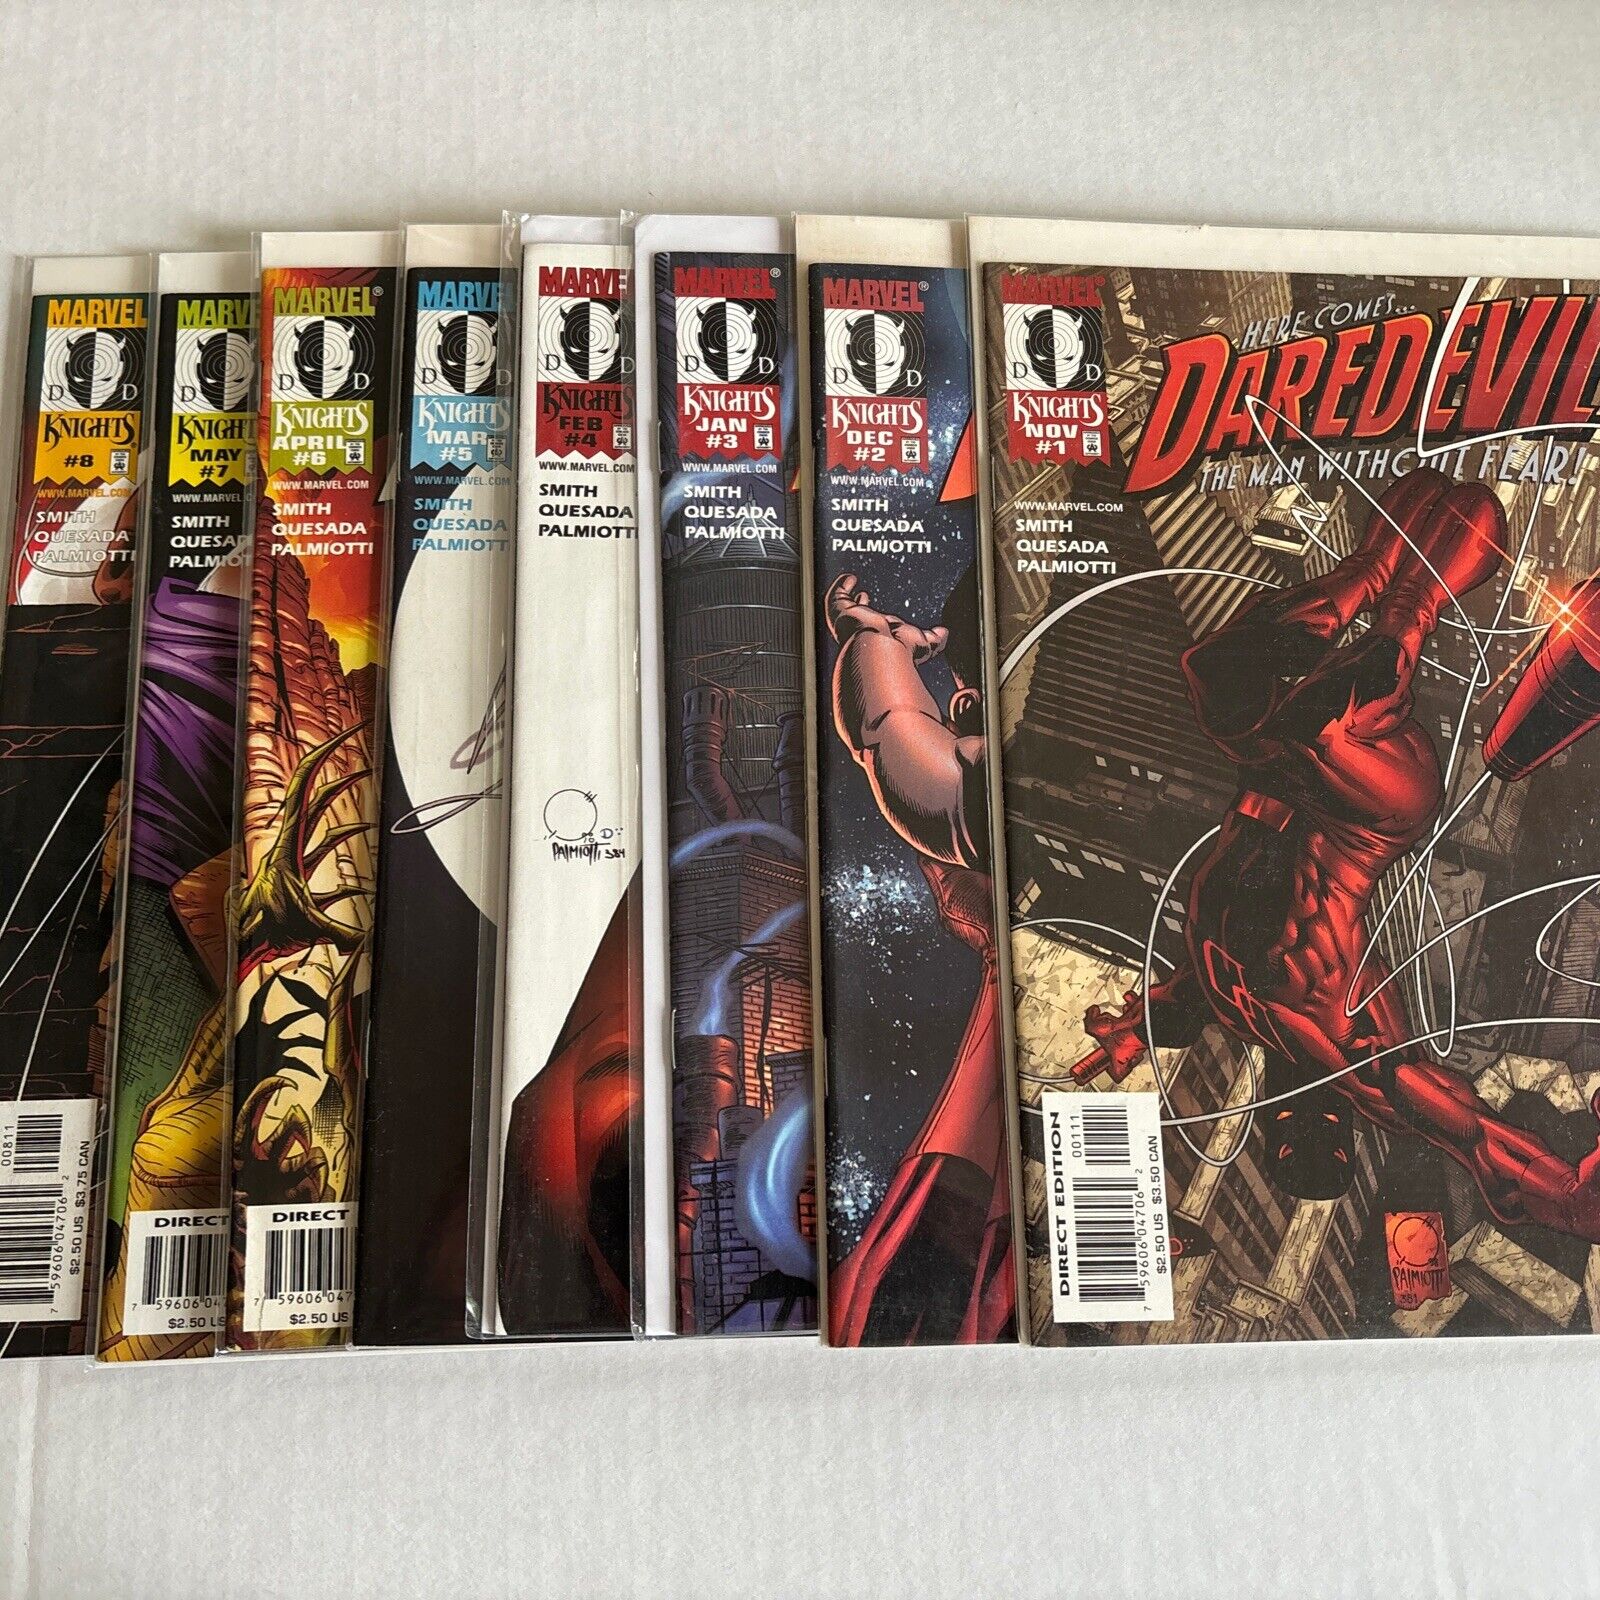 Marvel Daredevil Vol 2 (1998) Full Kevin Smith Run 1-8 Campbell Quesada